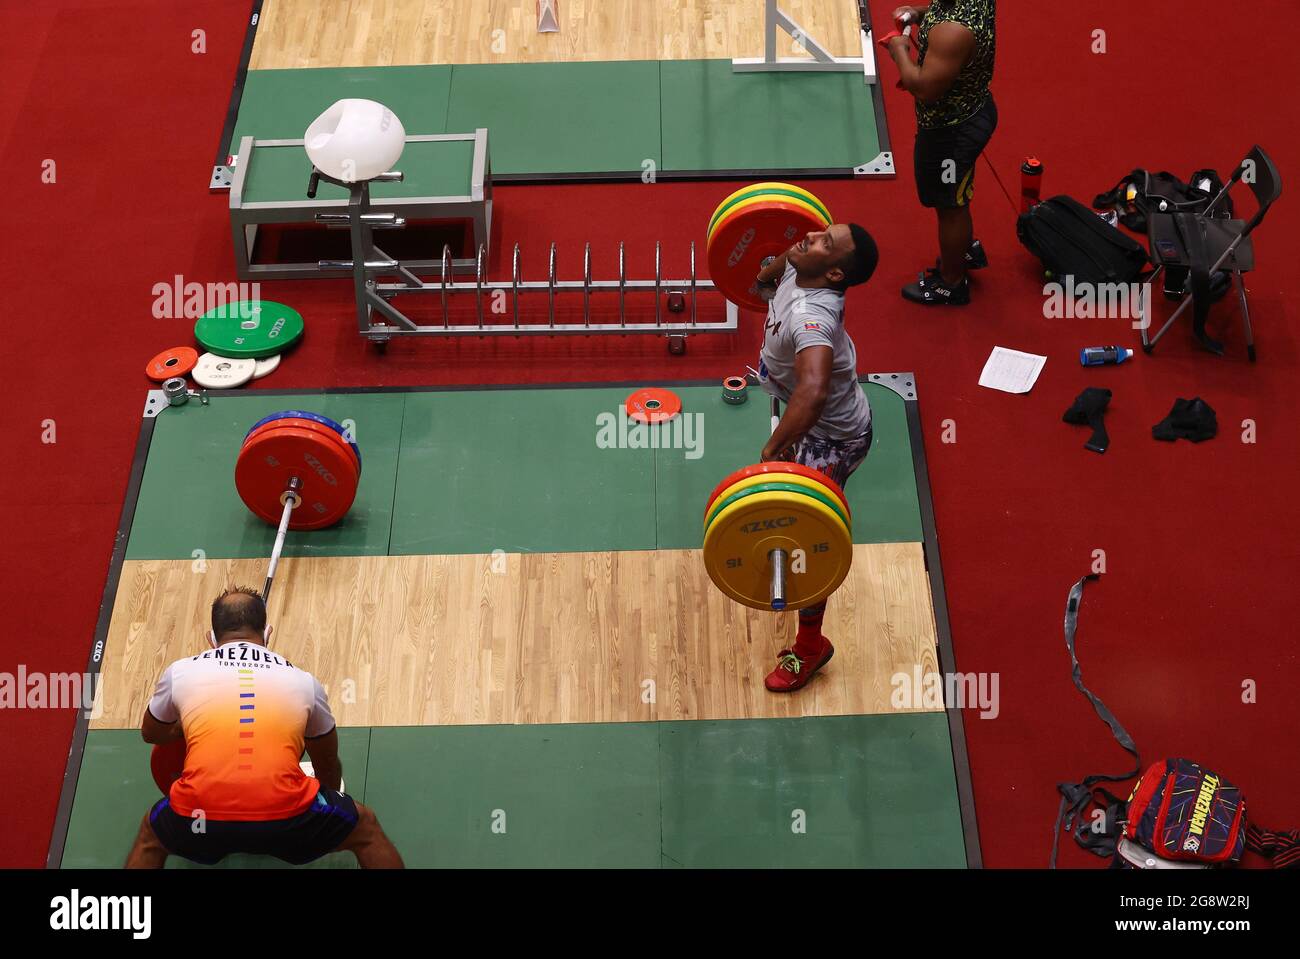 Juegos Olímpicos de Tokio 2020 - Entrenamiento de levantamiento de pesas - Foro Internacional de Tokio, Tokio, Japón - 23 de julio de 2021 Un atleta de Venezuela durante el entrenamiento DE REUTERS/Edgard Garrido Foto de stock